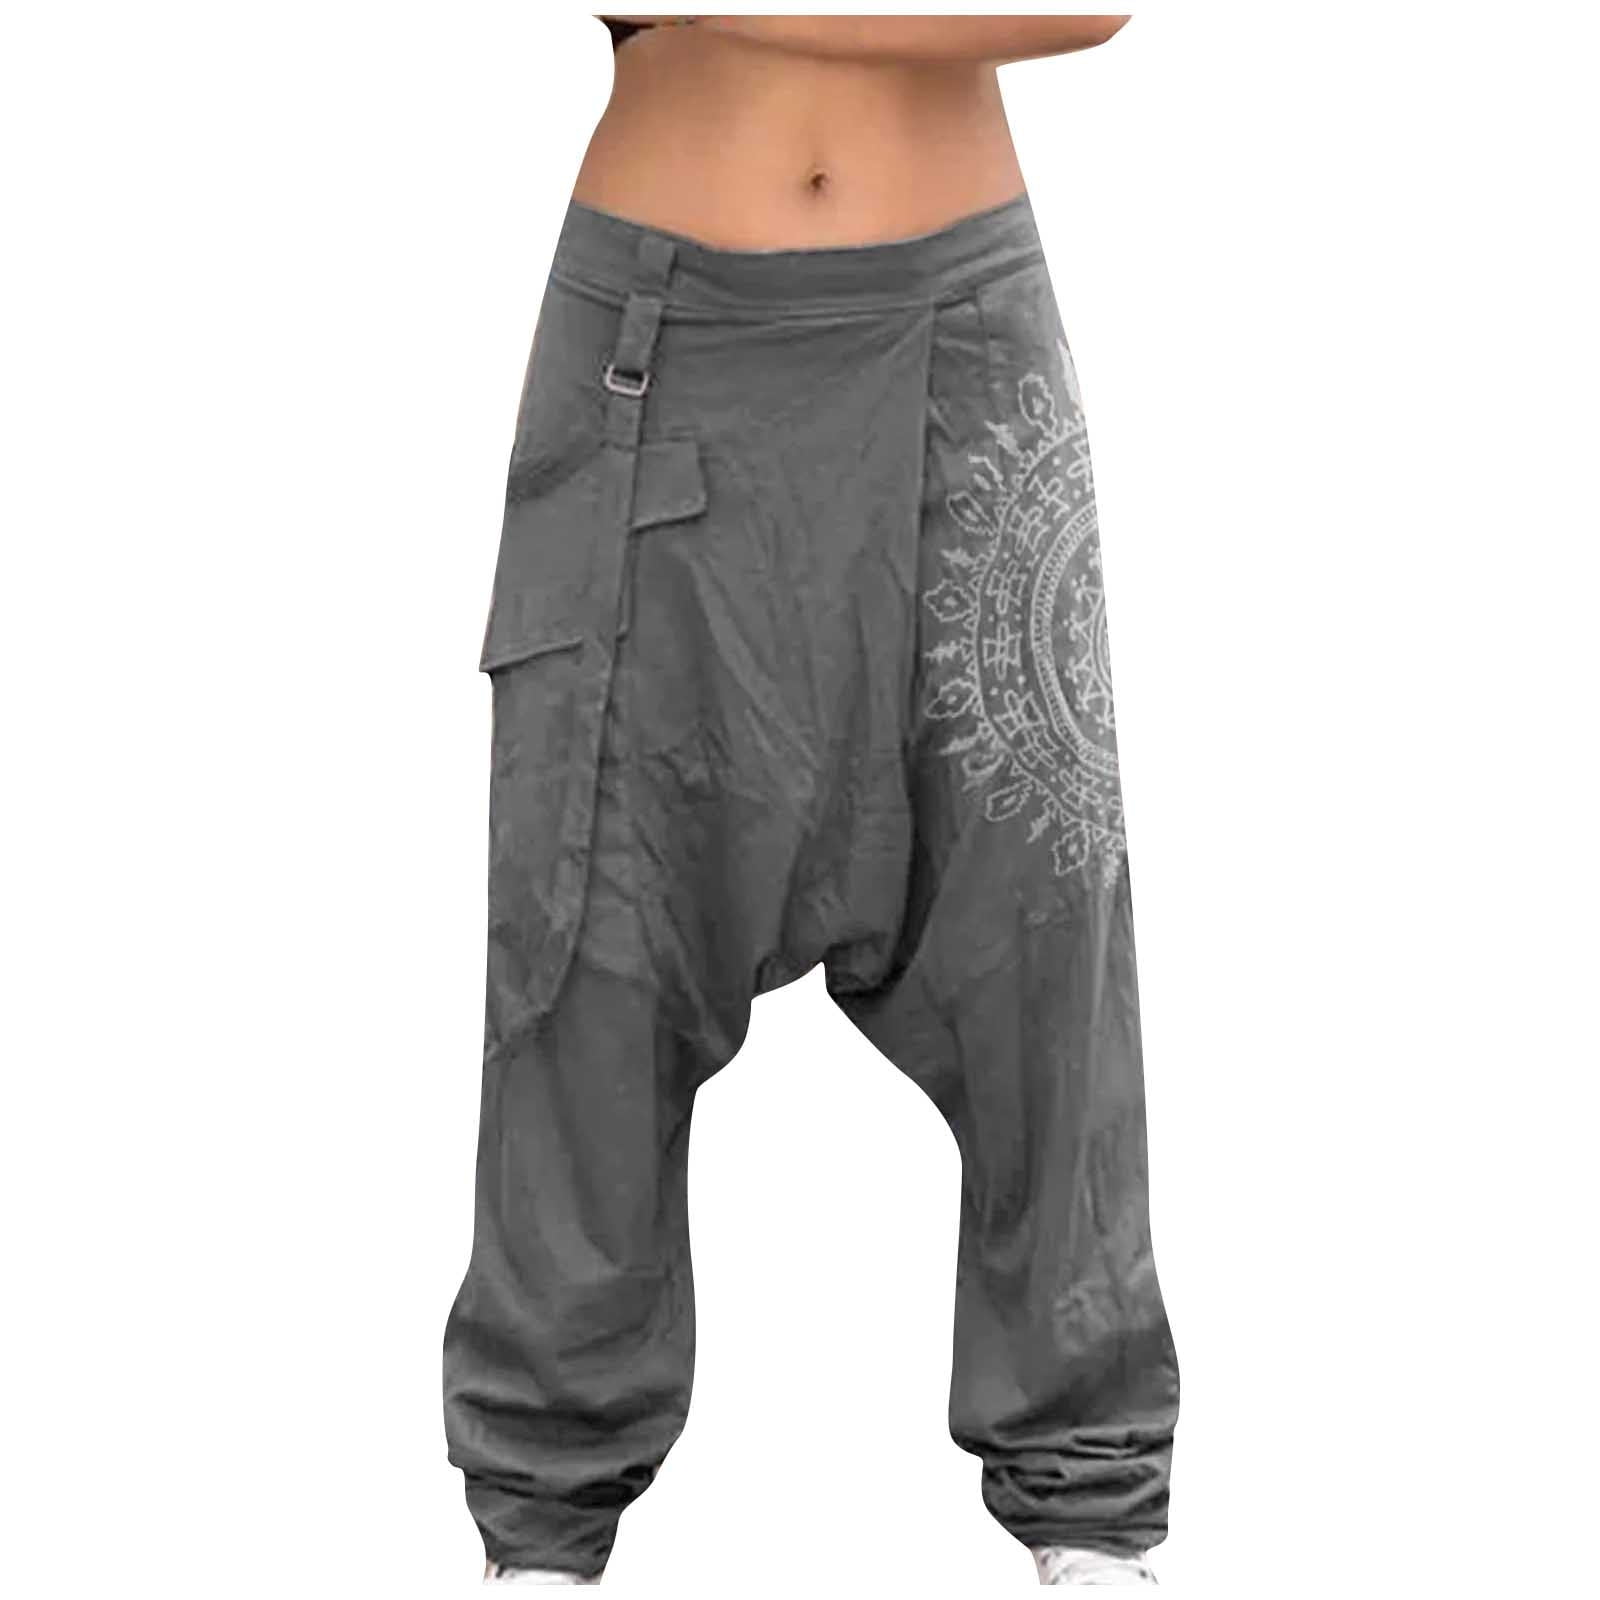 Mens Flowy Harem Pants | Elephant Pants – Lannaclothesdesign Shop